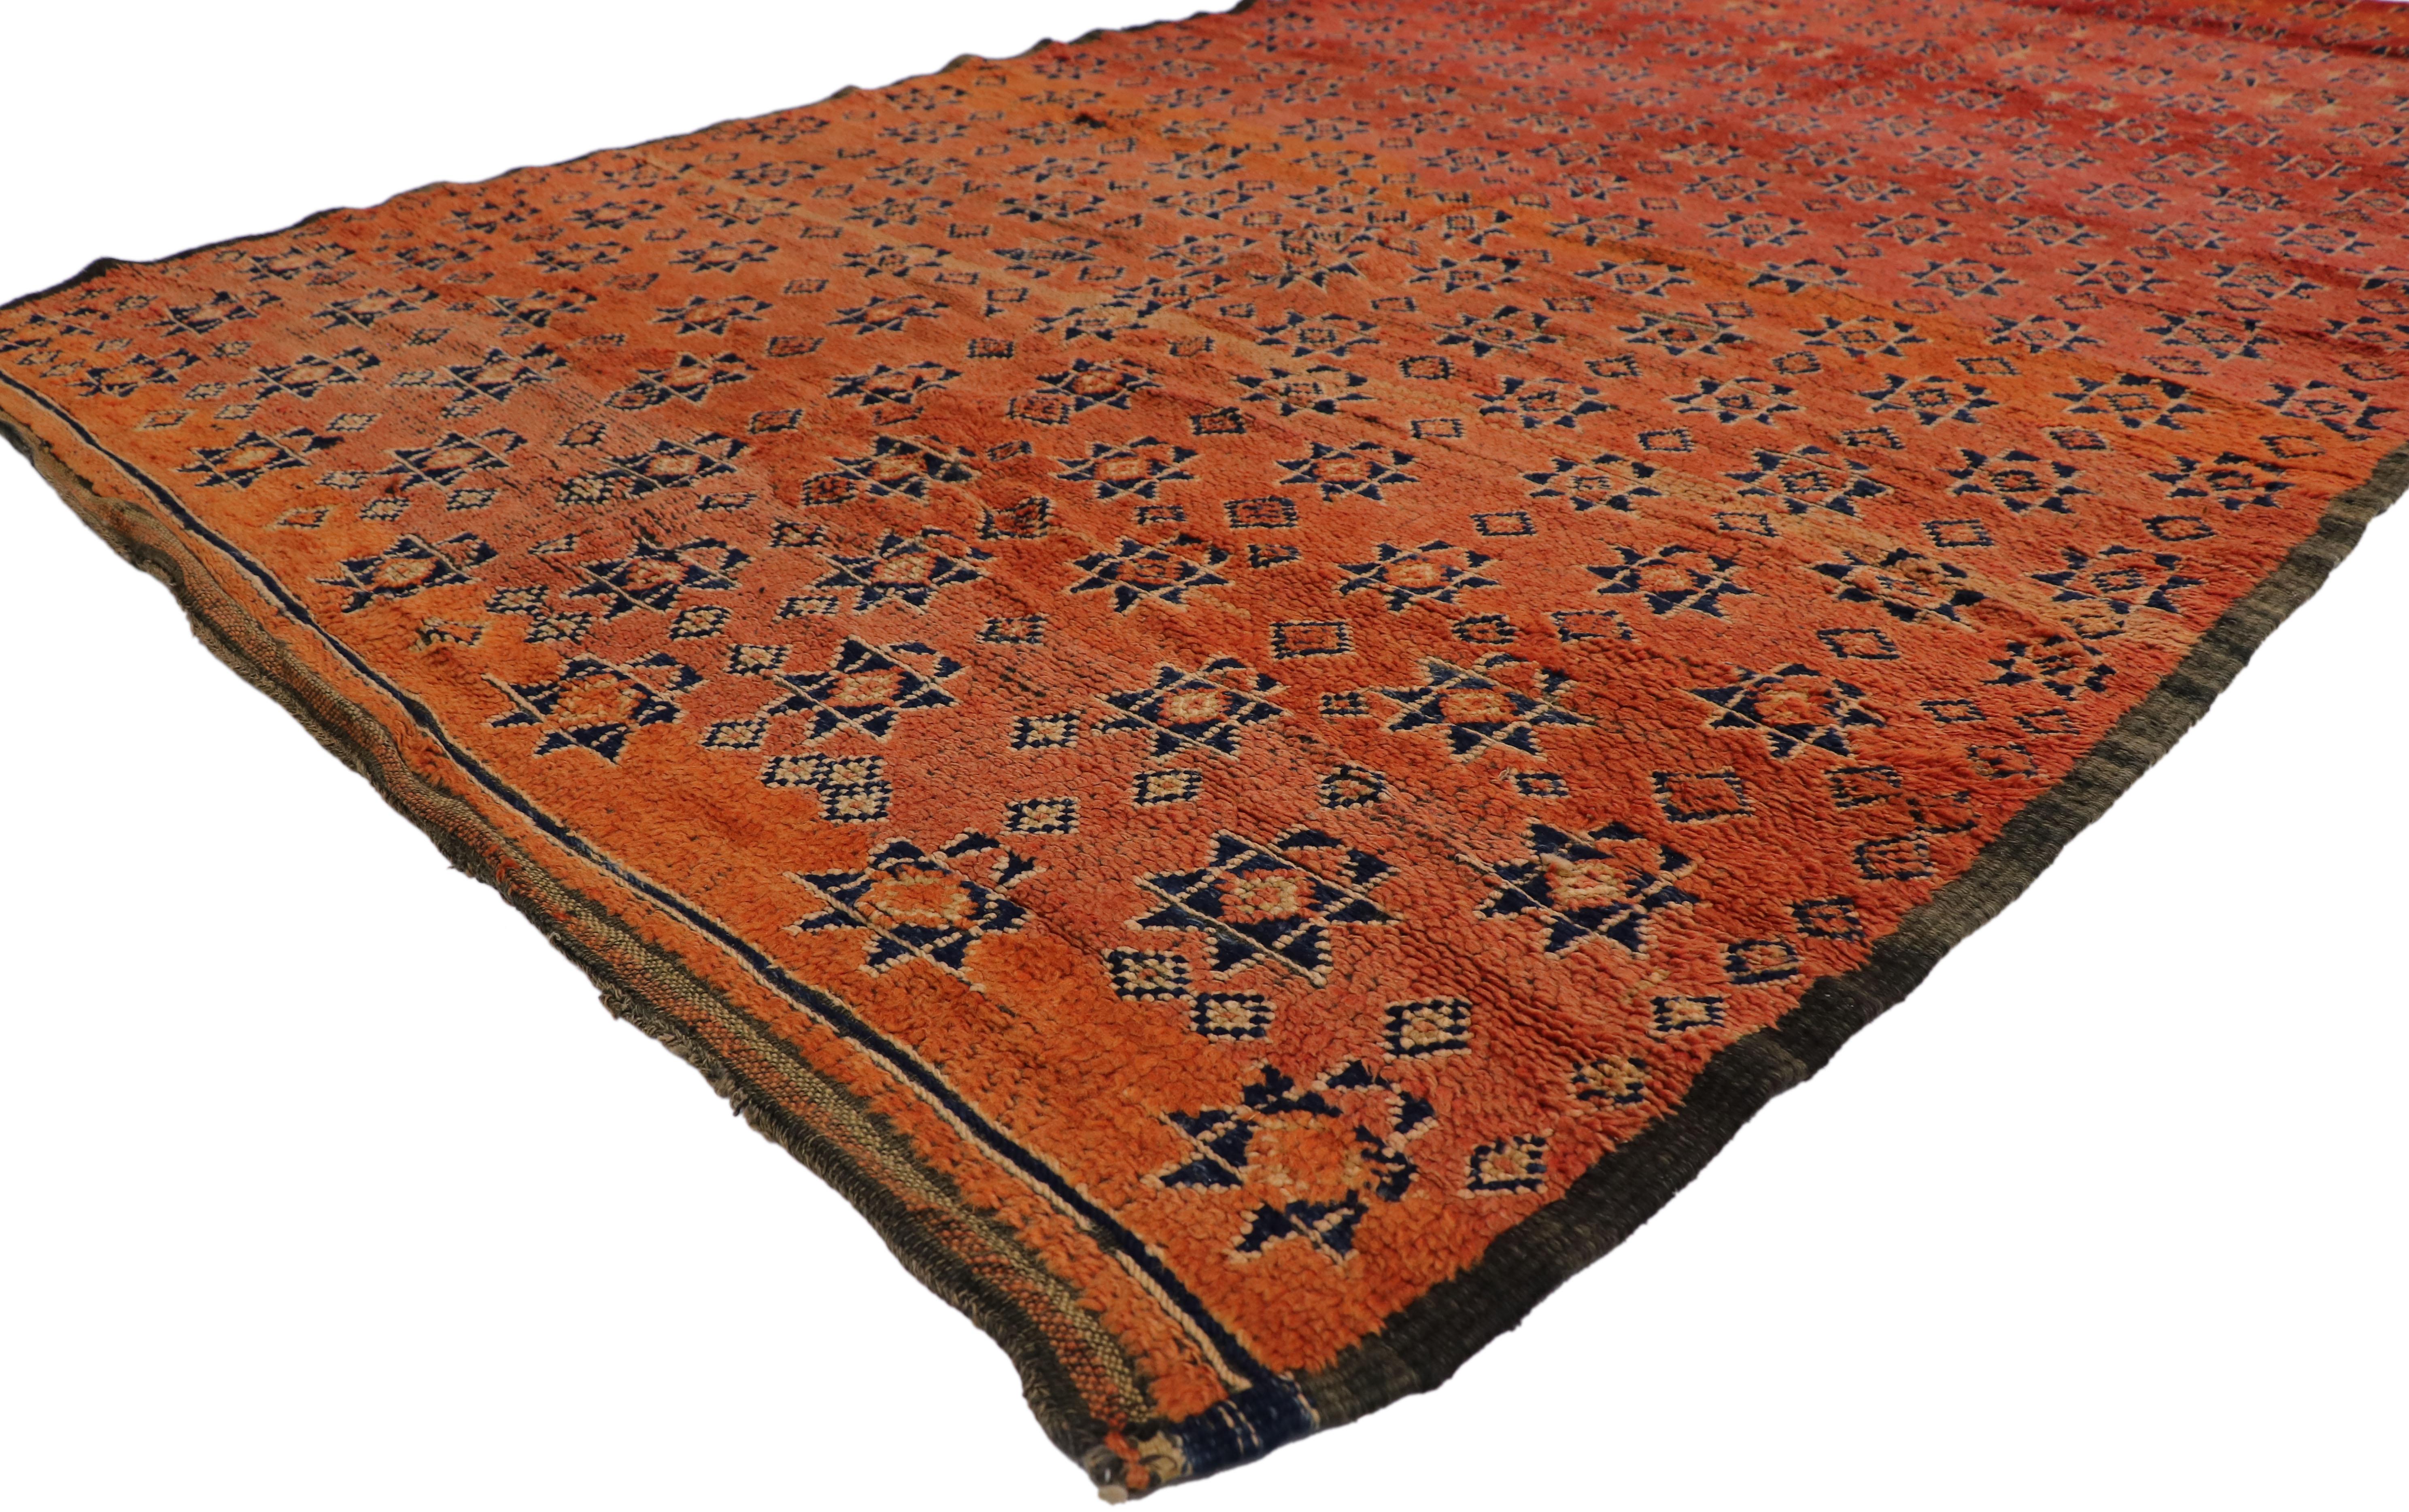 21473 Vintage Beni MGuild Marokkanischer Teppich, 05'09 x 09'08. Die vom Stamm der Beni M'Guild im Mittleren Atlasgebirge Marokkos stammenden Beni M'Guild-Teppiche verkörpern eine geschätzte Tradition, die von erfahrenen Berberfrauen in sorgfältiger